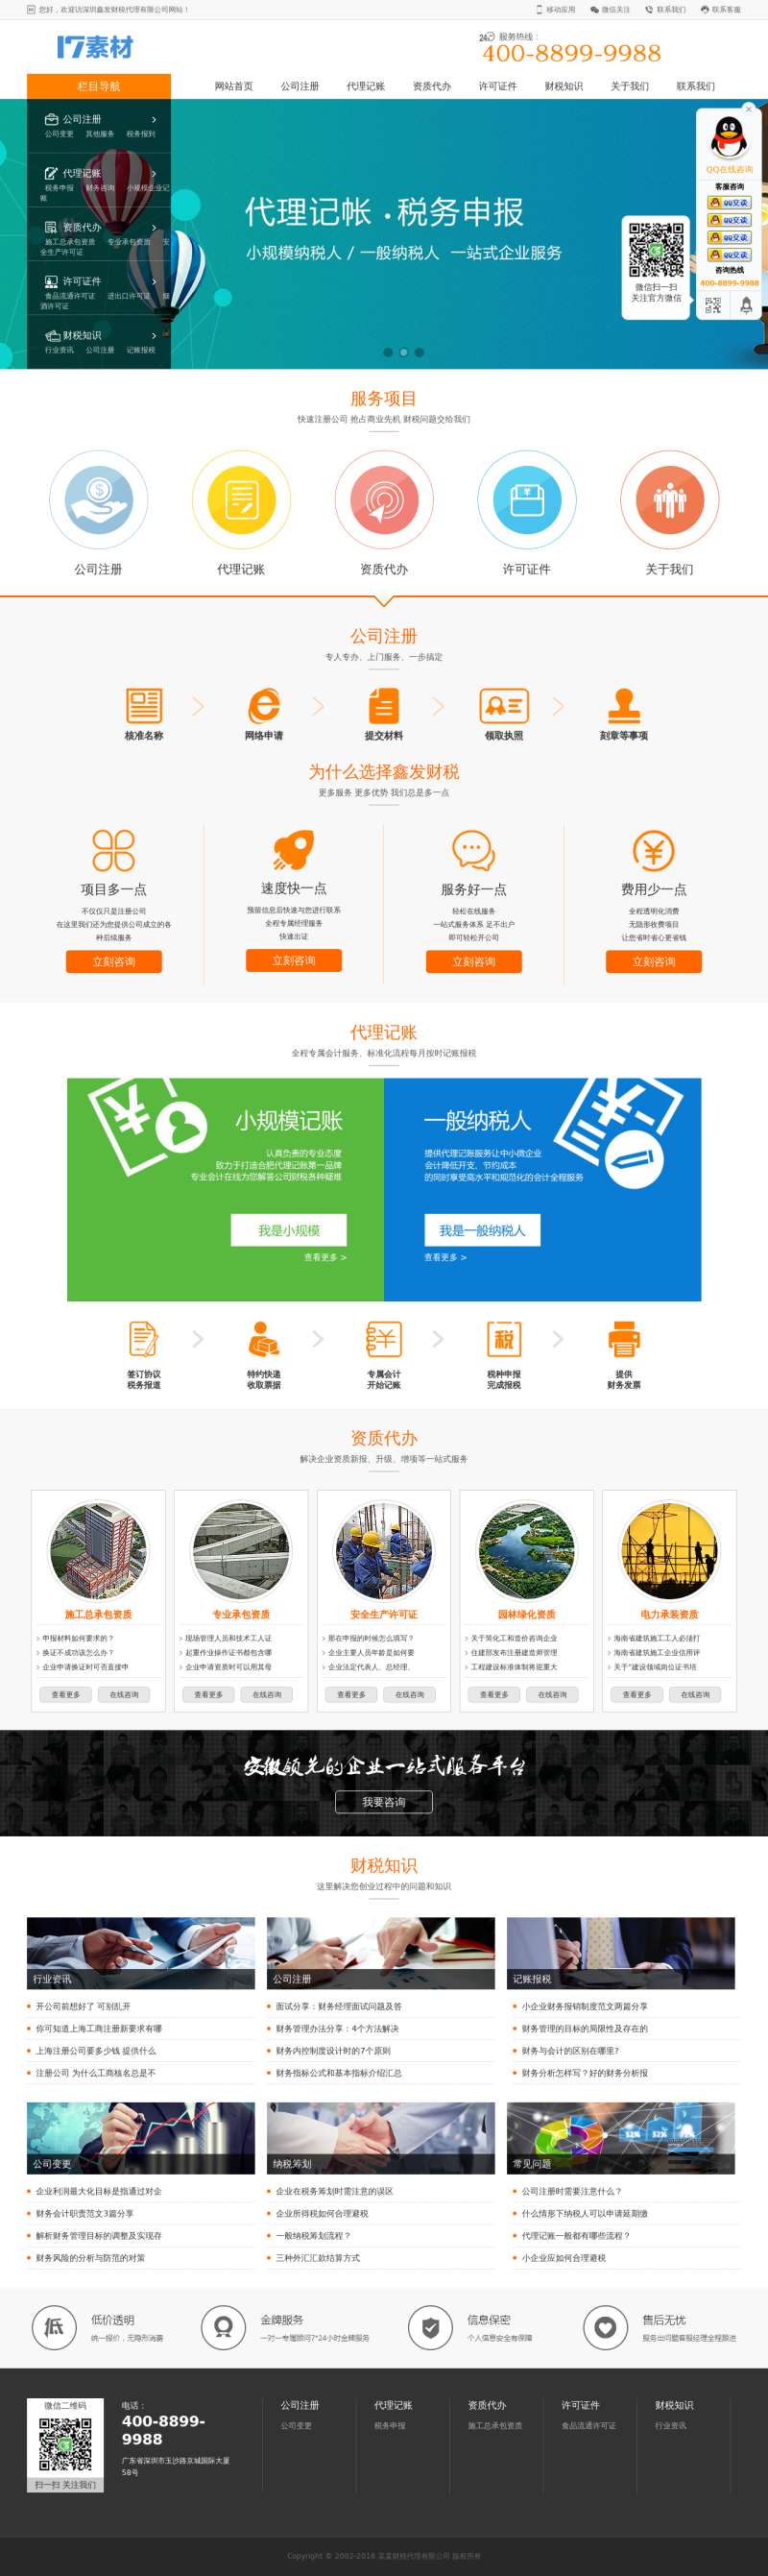 橙色的公司注册财税代理公司网站模板